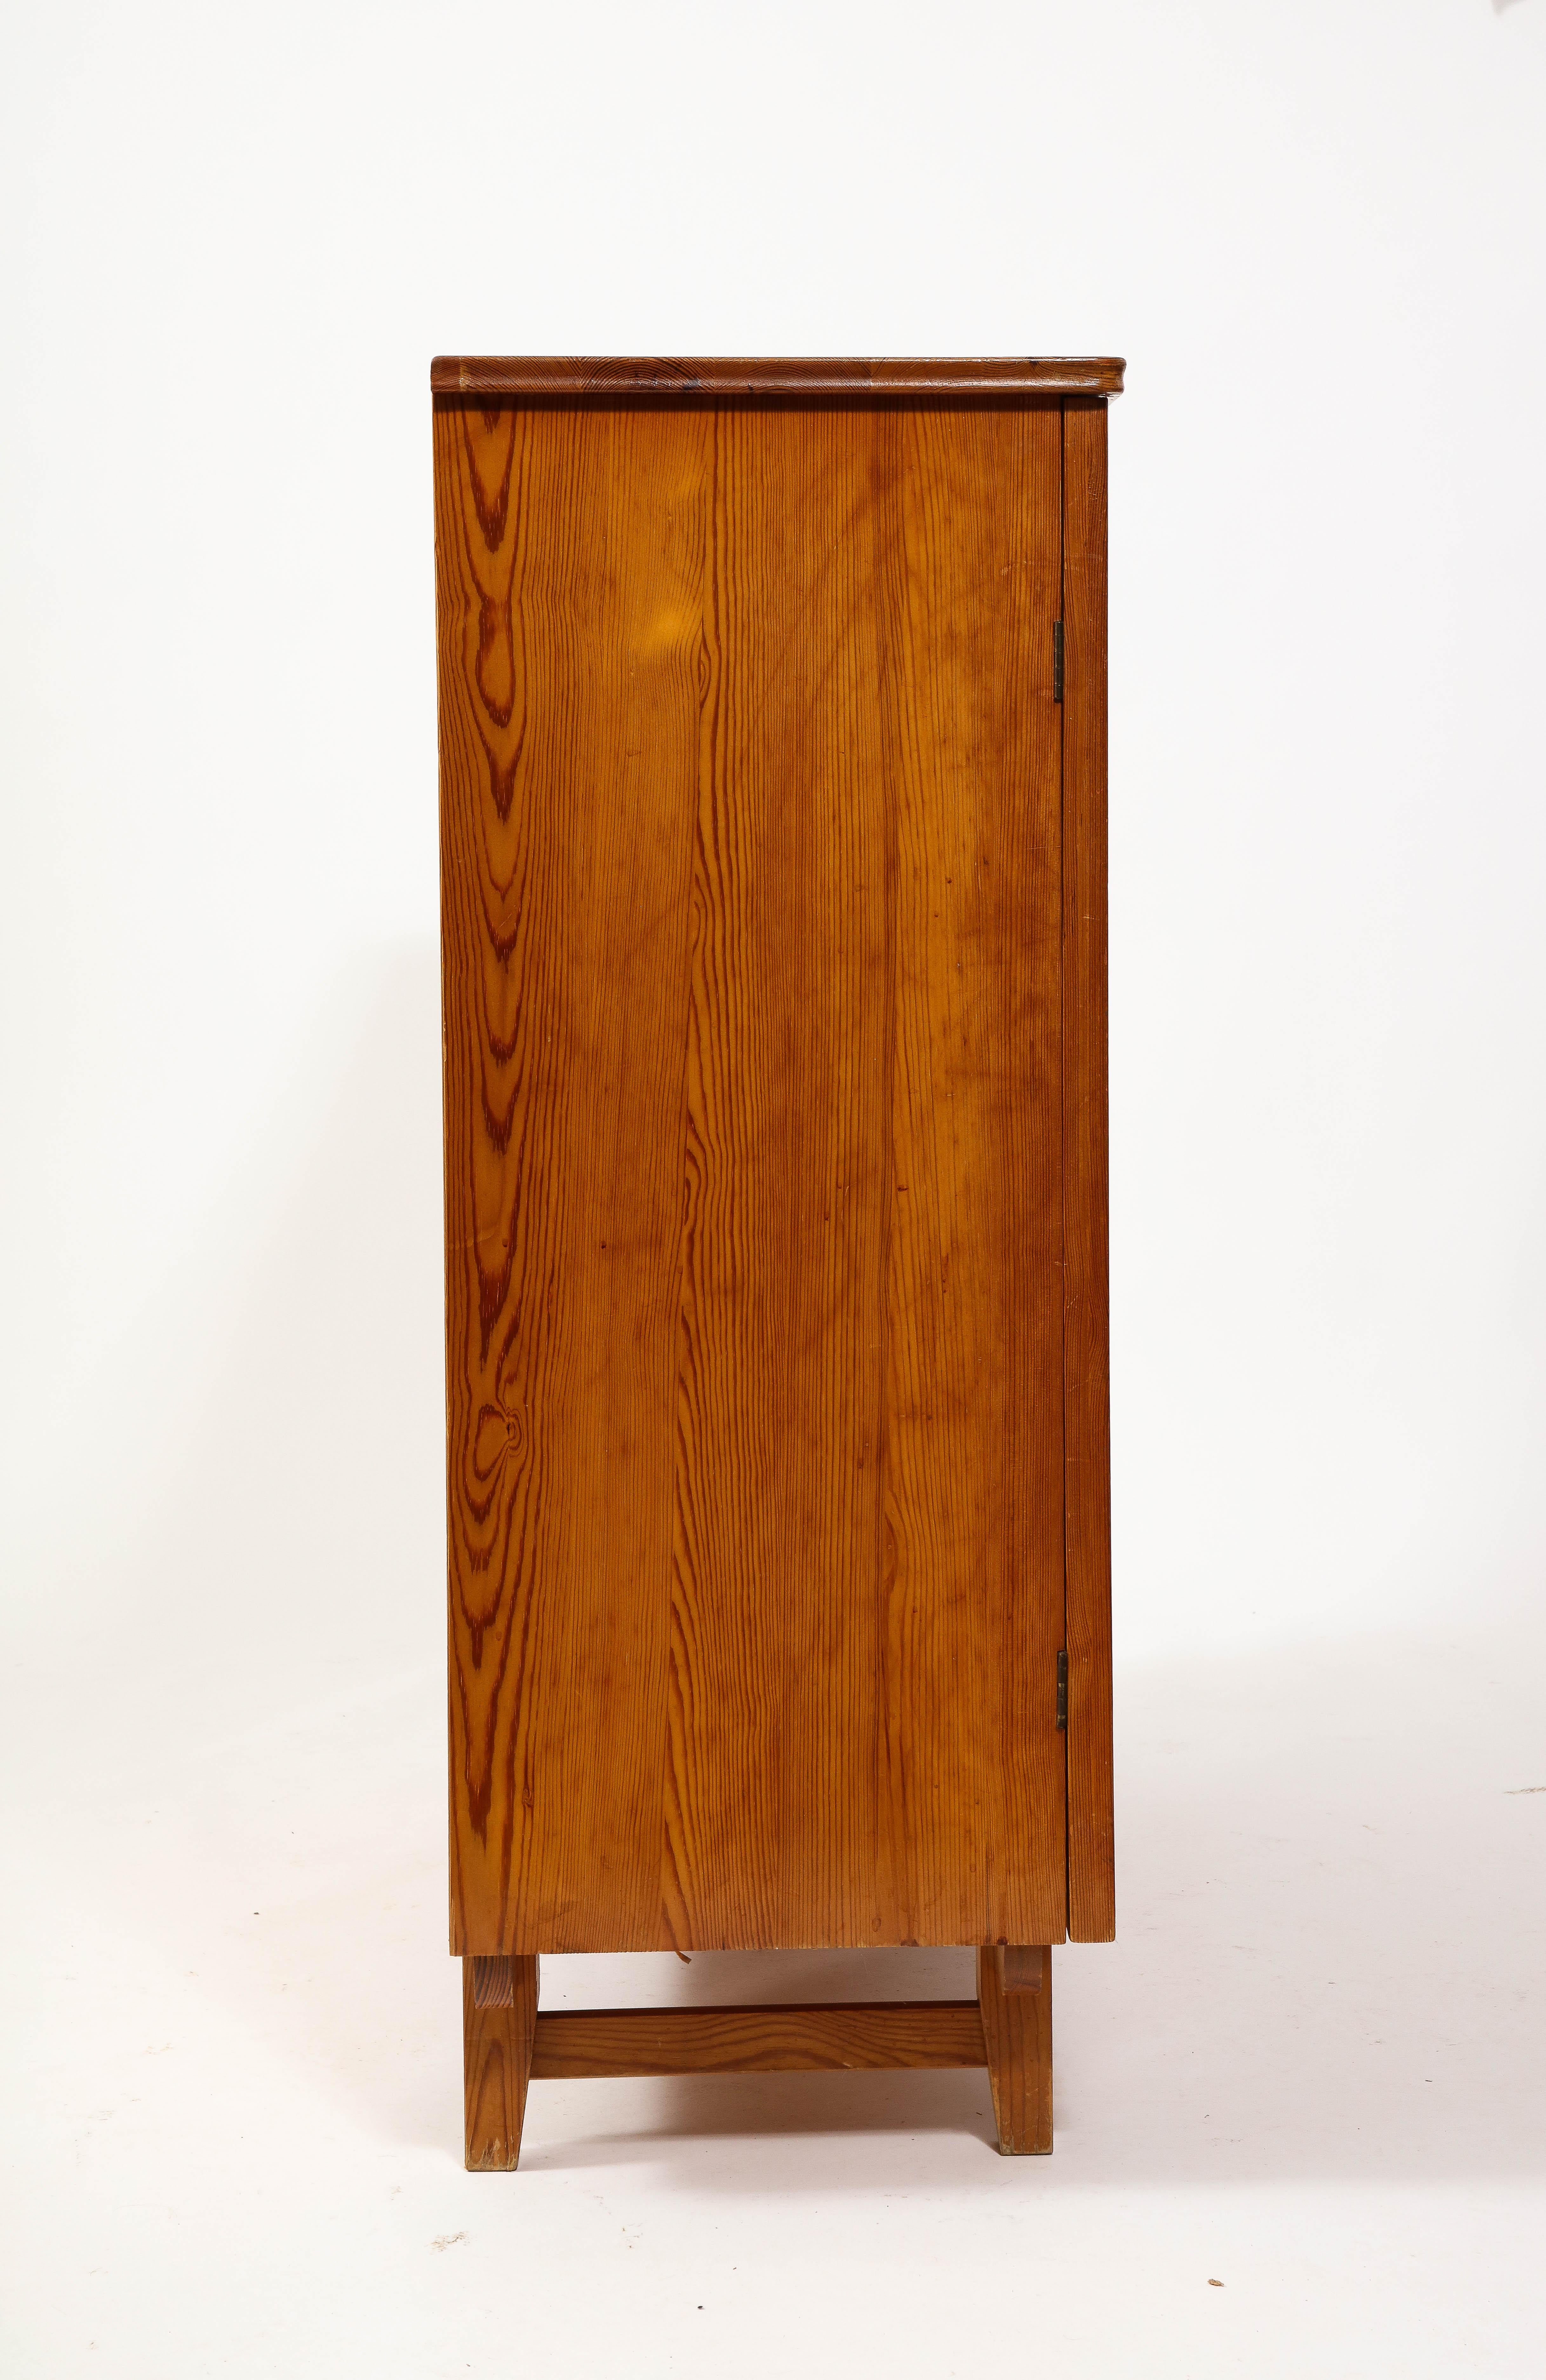 Göran Malmvall Svensk Stamped Modernist Rustic Pine Cabinet, Sweden 1950's For Sale 2